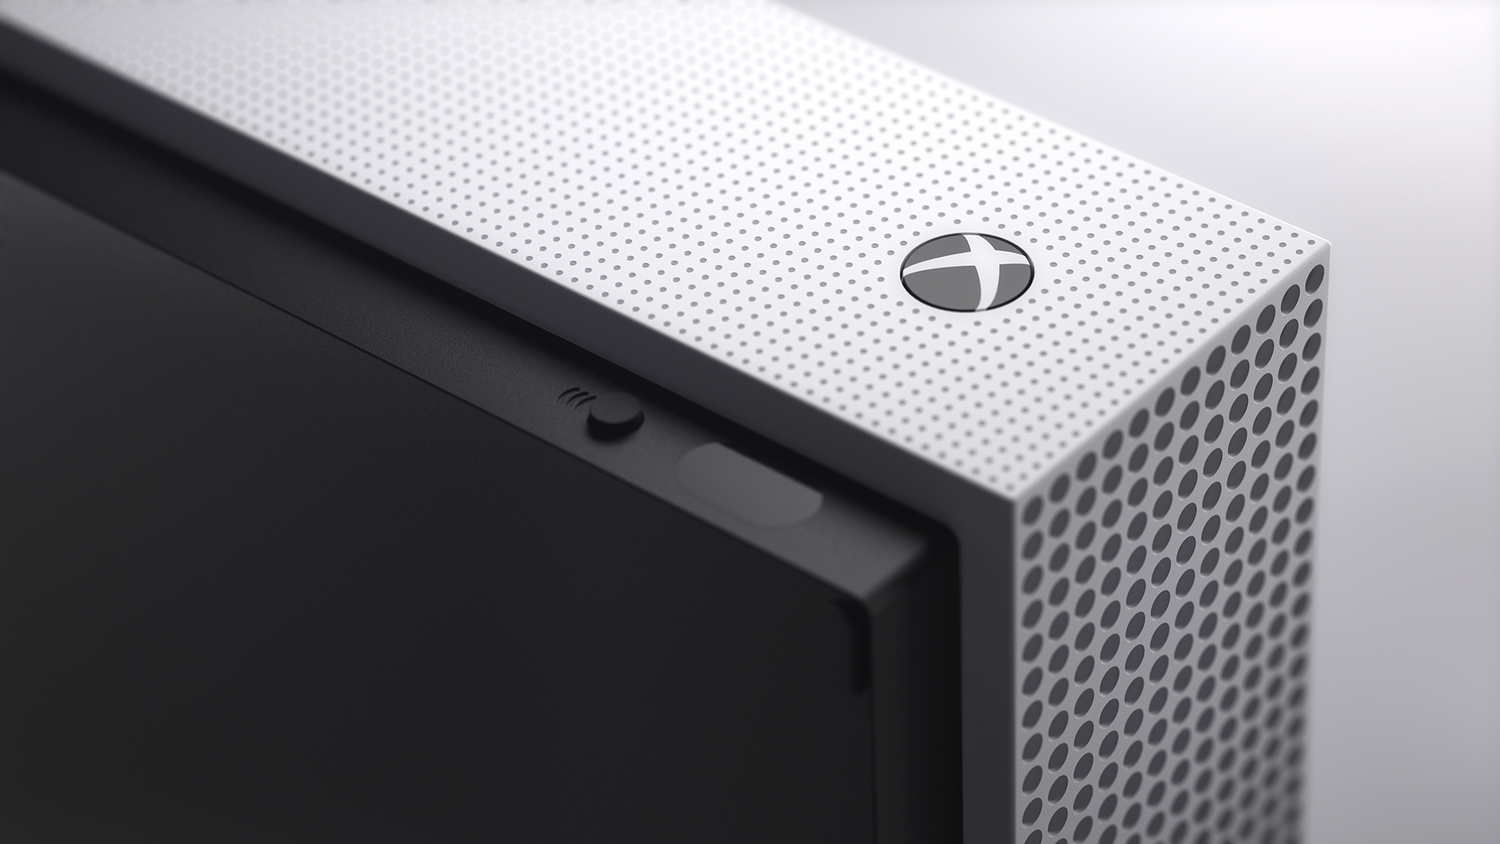 Xbox One : on n'a jamais été aussi proches de la compatibilité clavier/souris  - Numerama